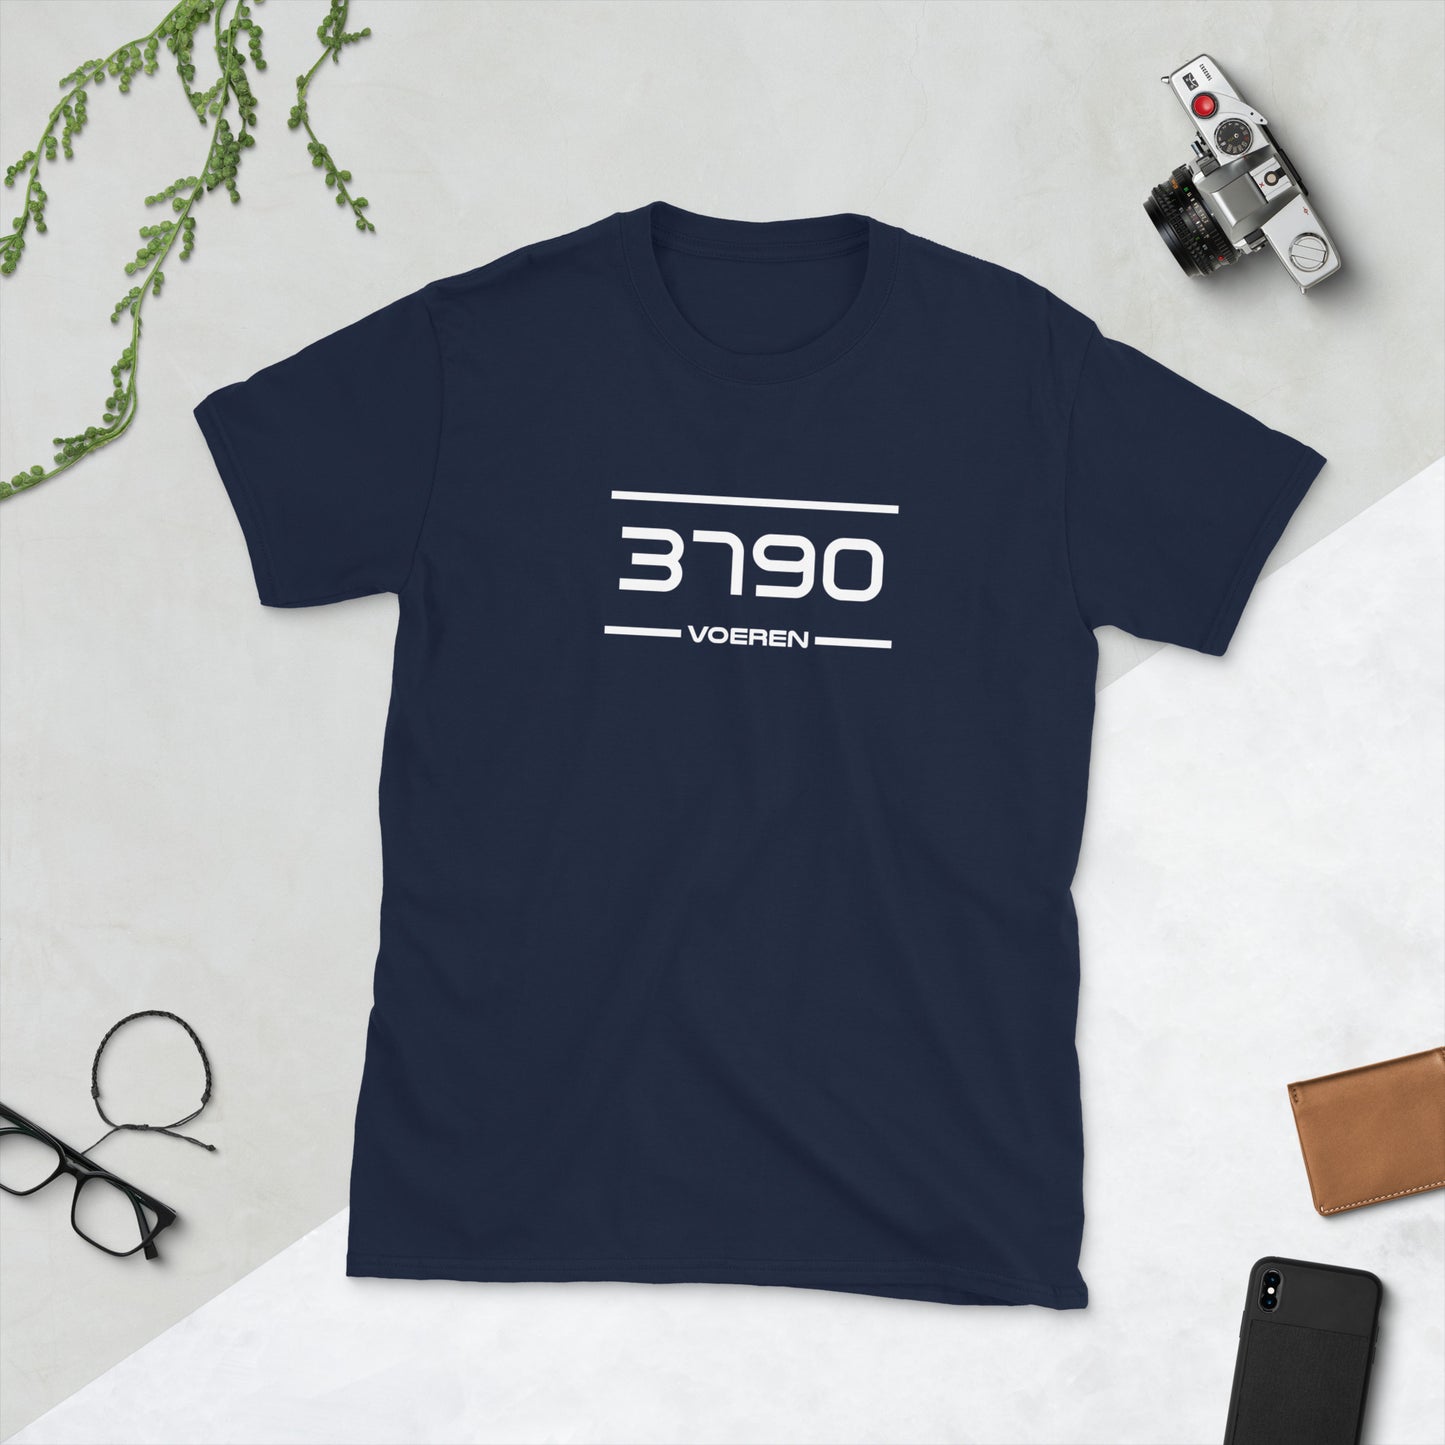 Tshirt - 3790 - Voeren